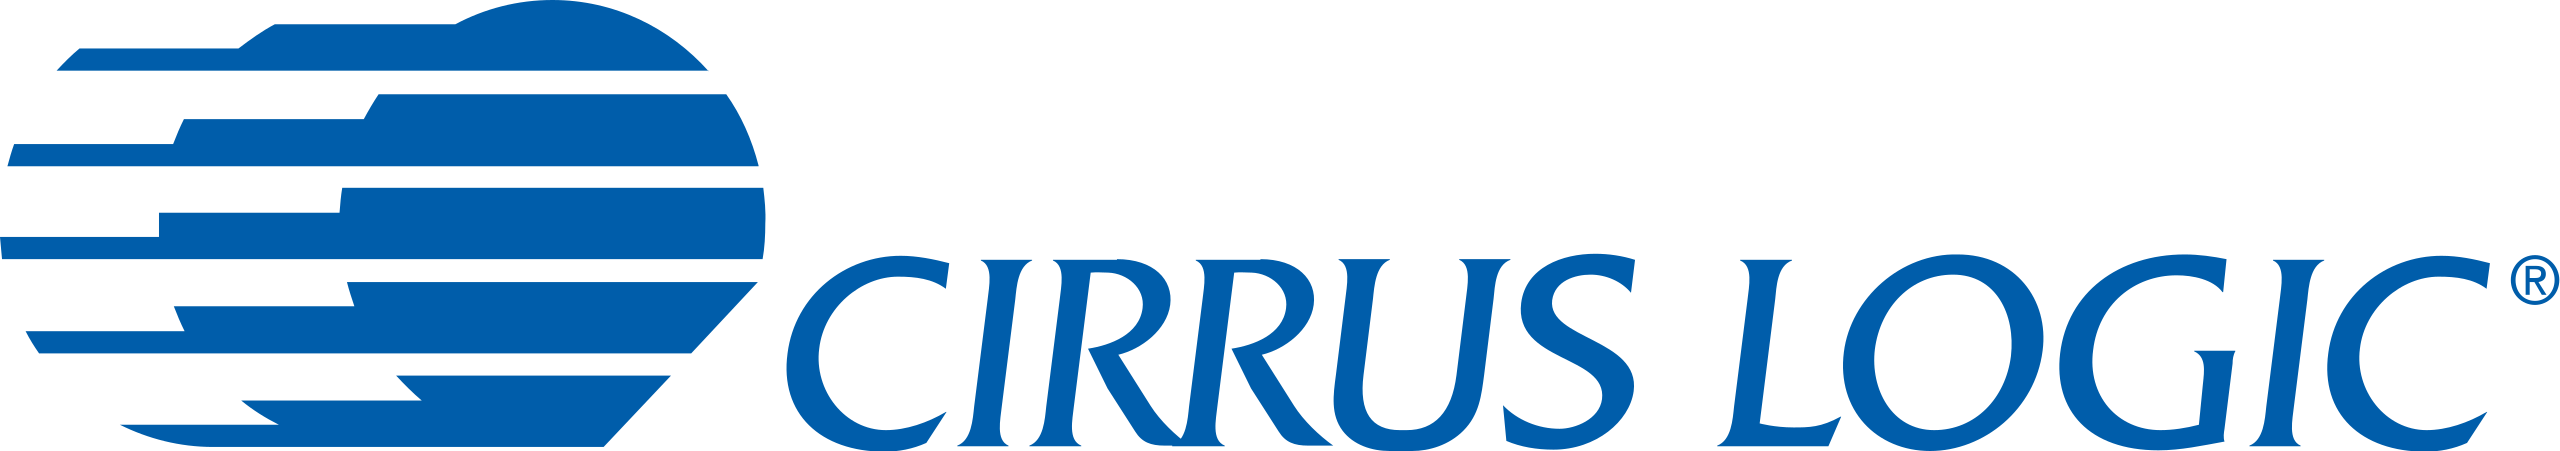 CIRRUS LOGIC logo